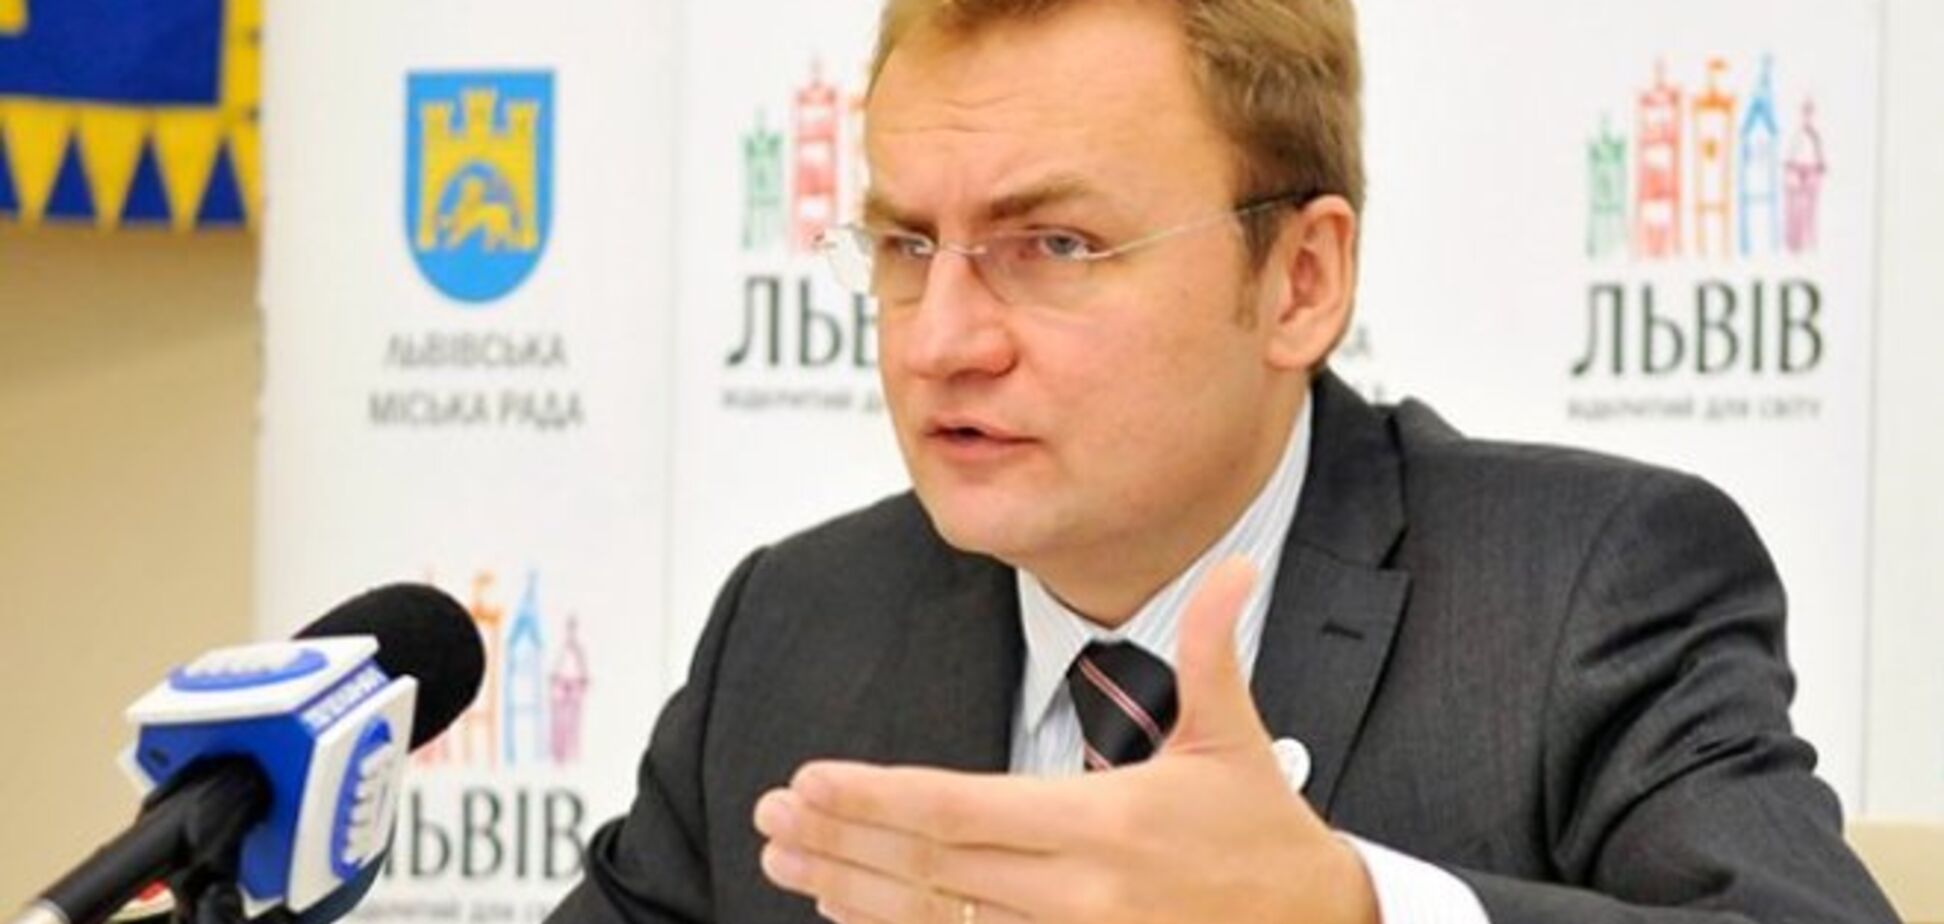 Депутат-свободовец чуть не избил мэра Львова прямо на совещании